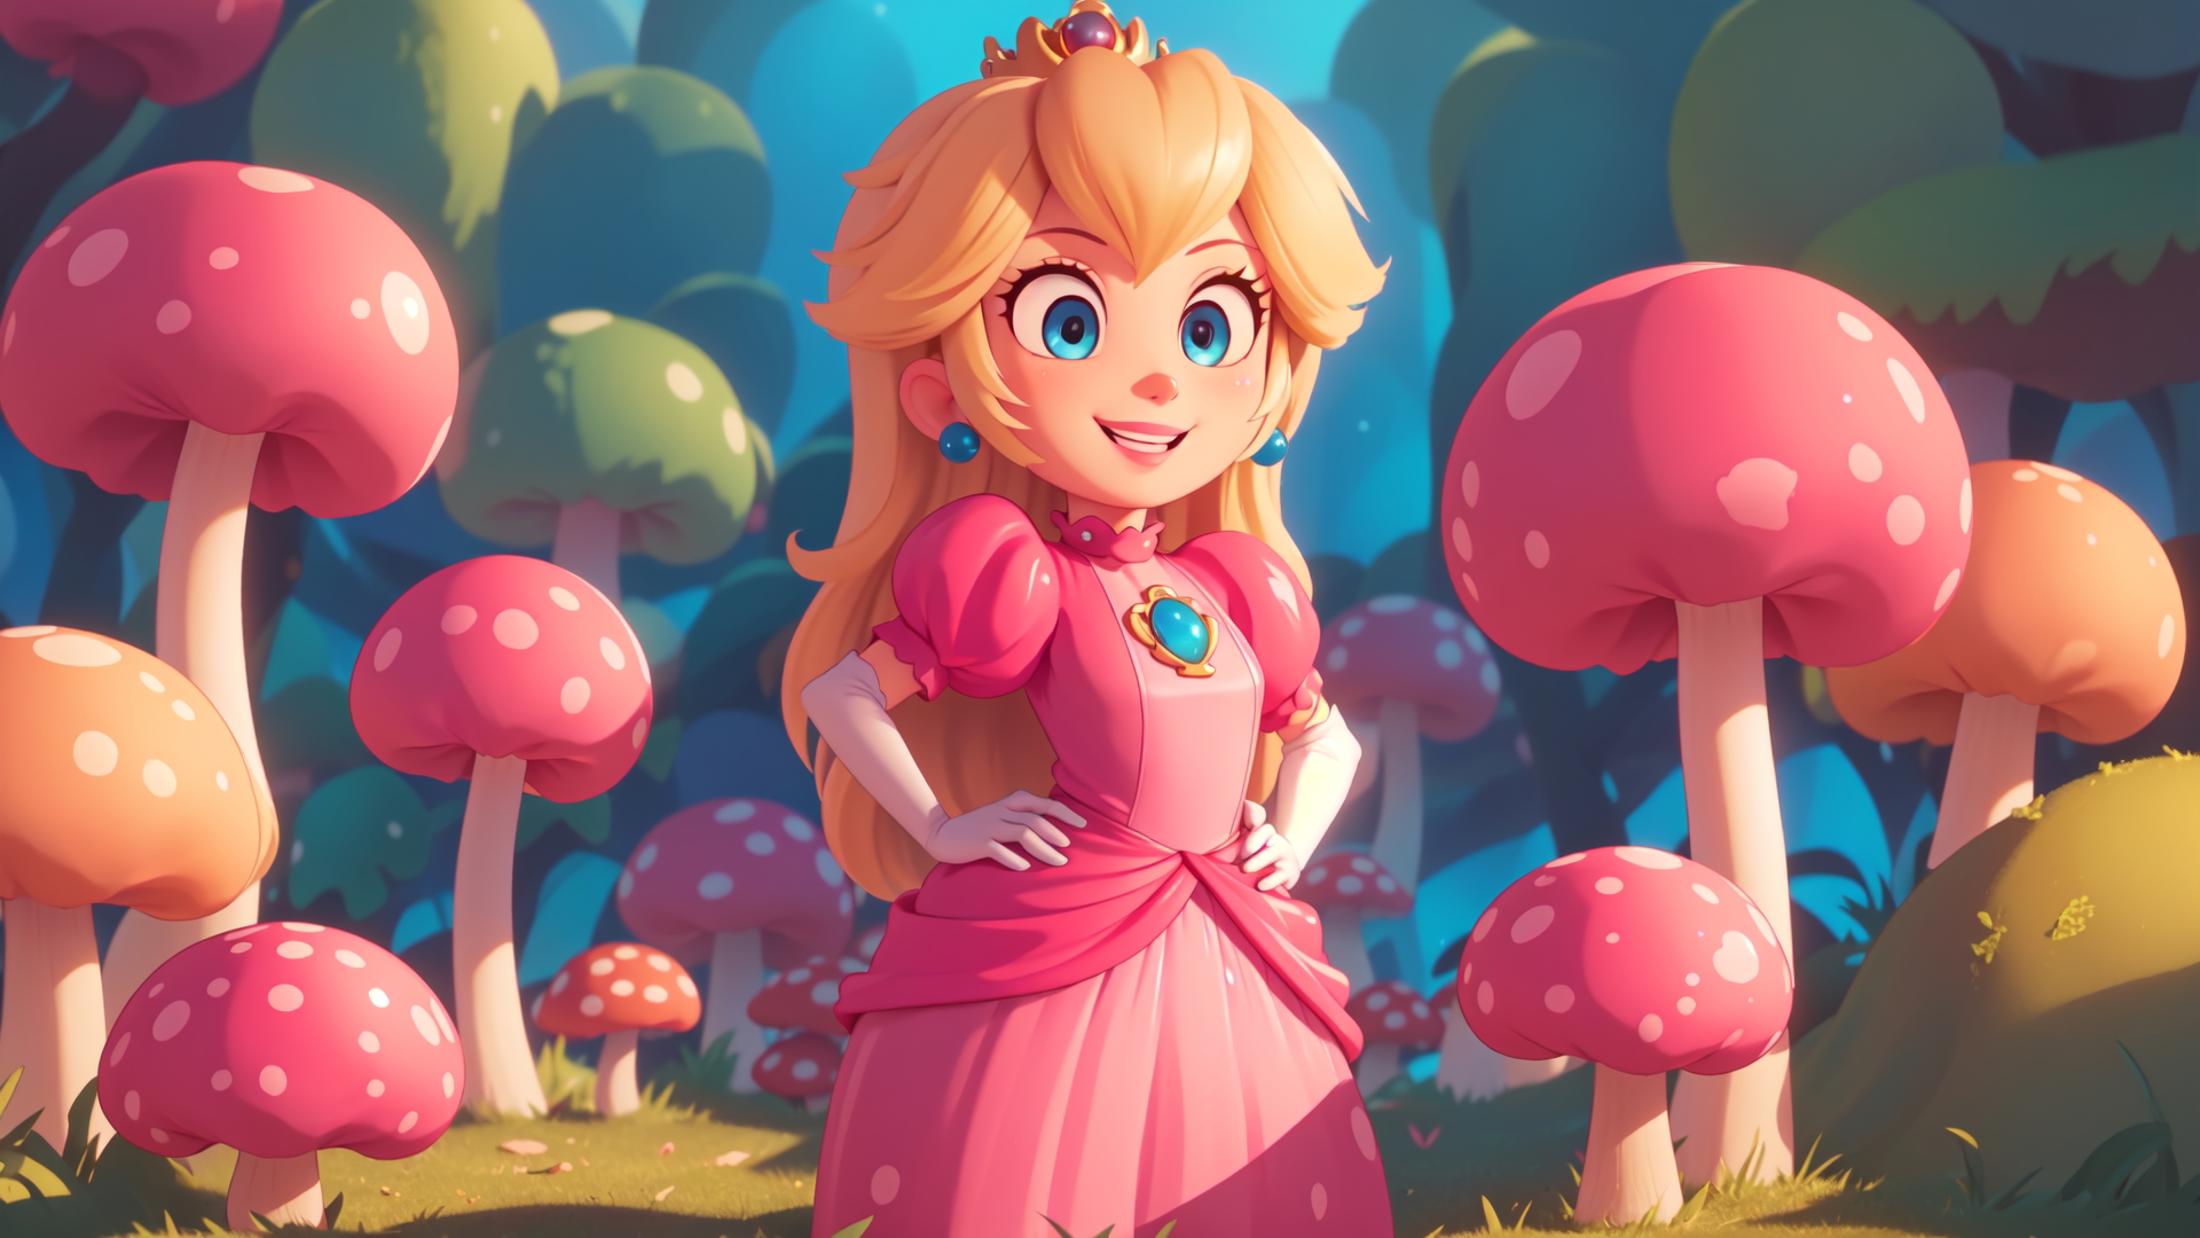 princess peach - The Super Mario Bros. Movie - movie like image by marusame